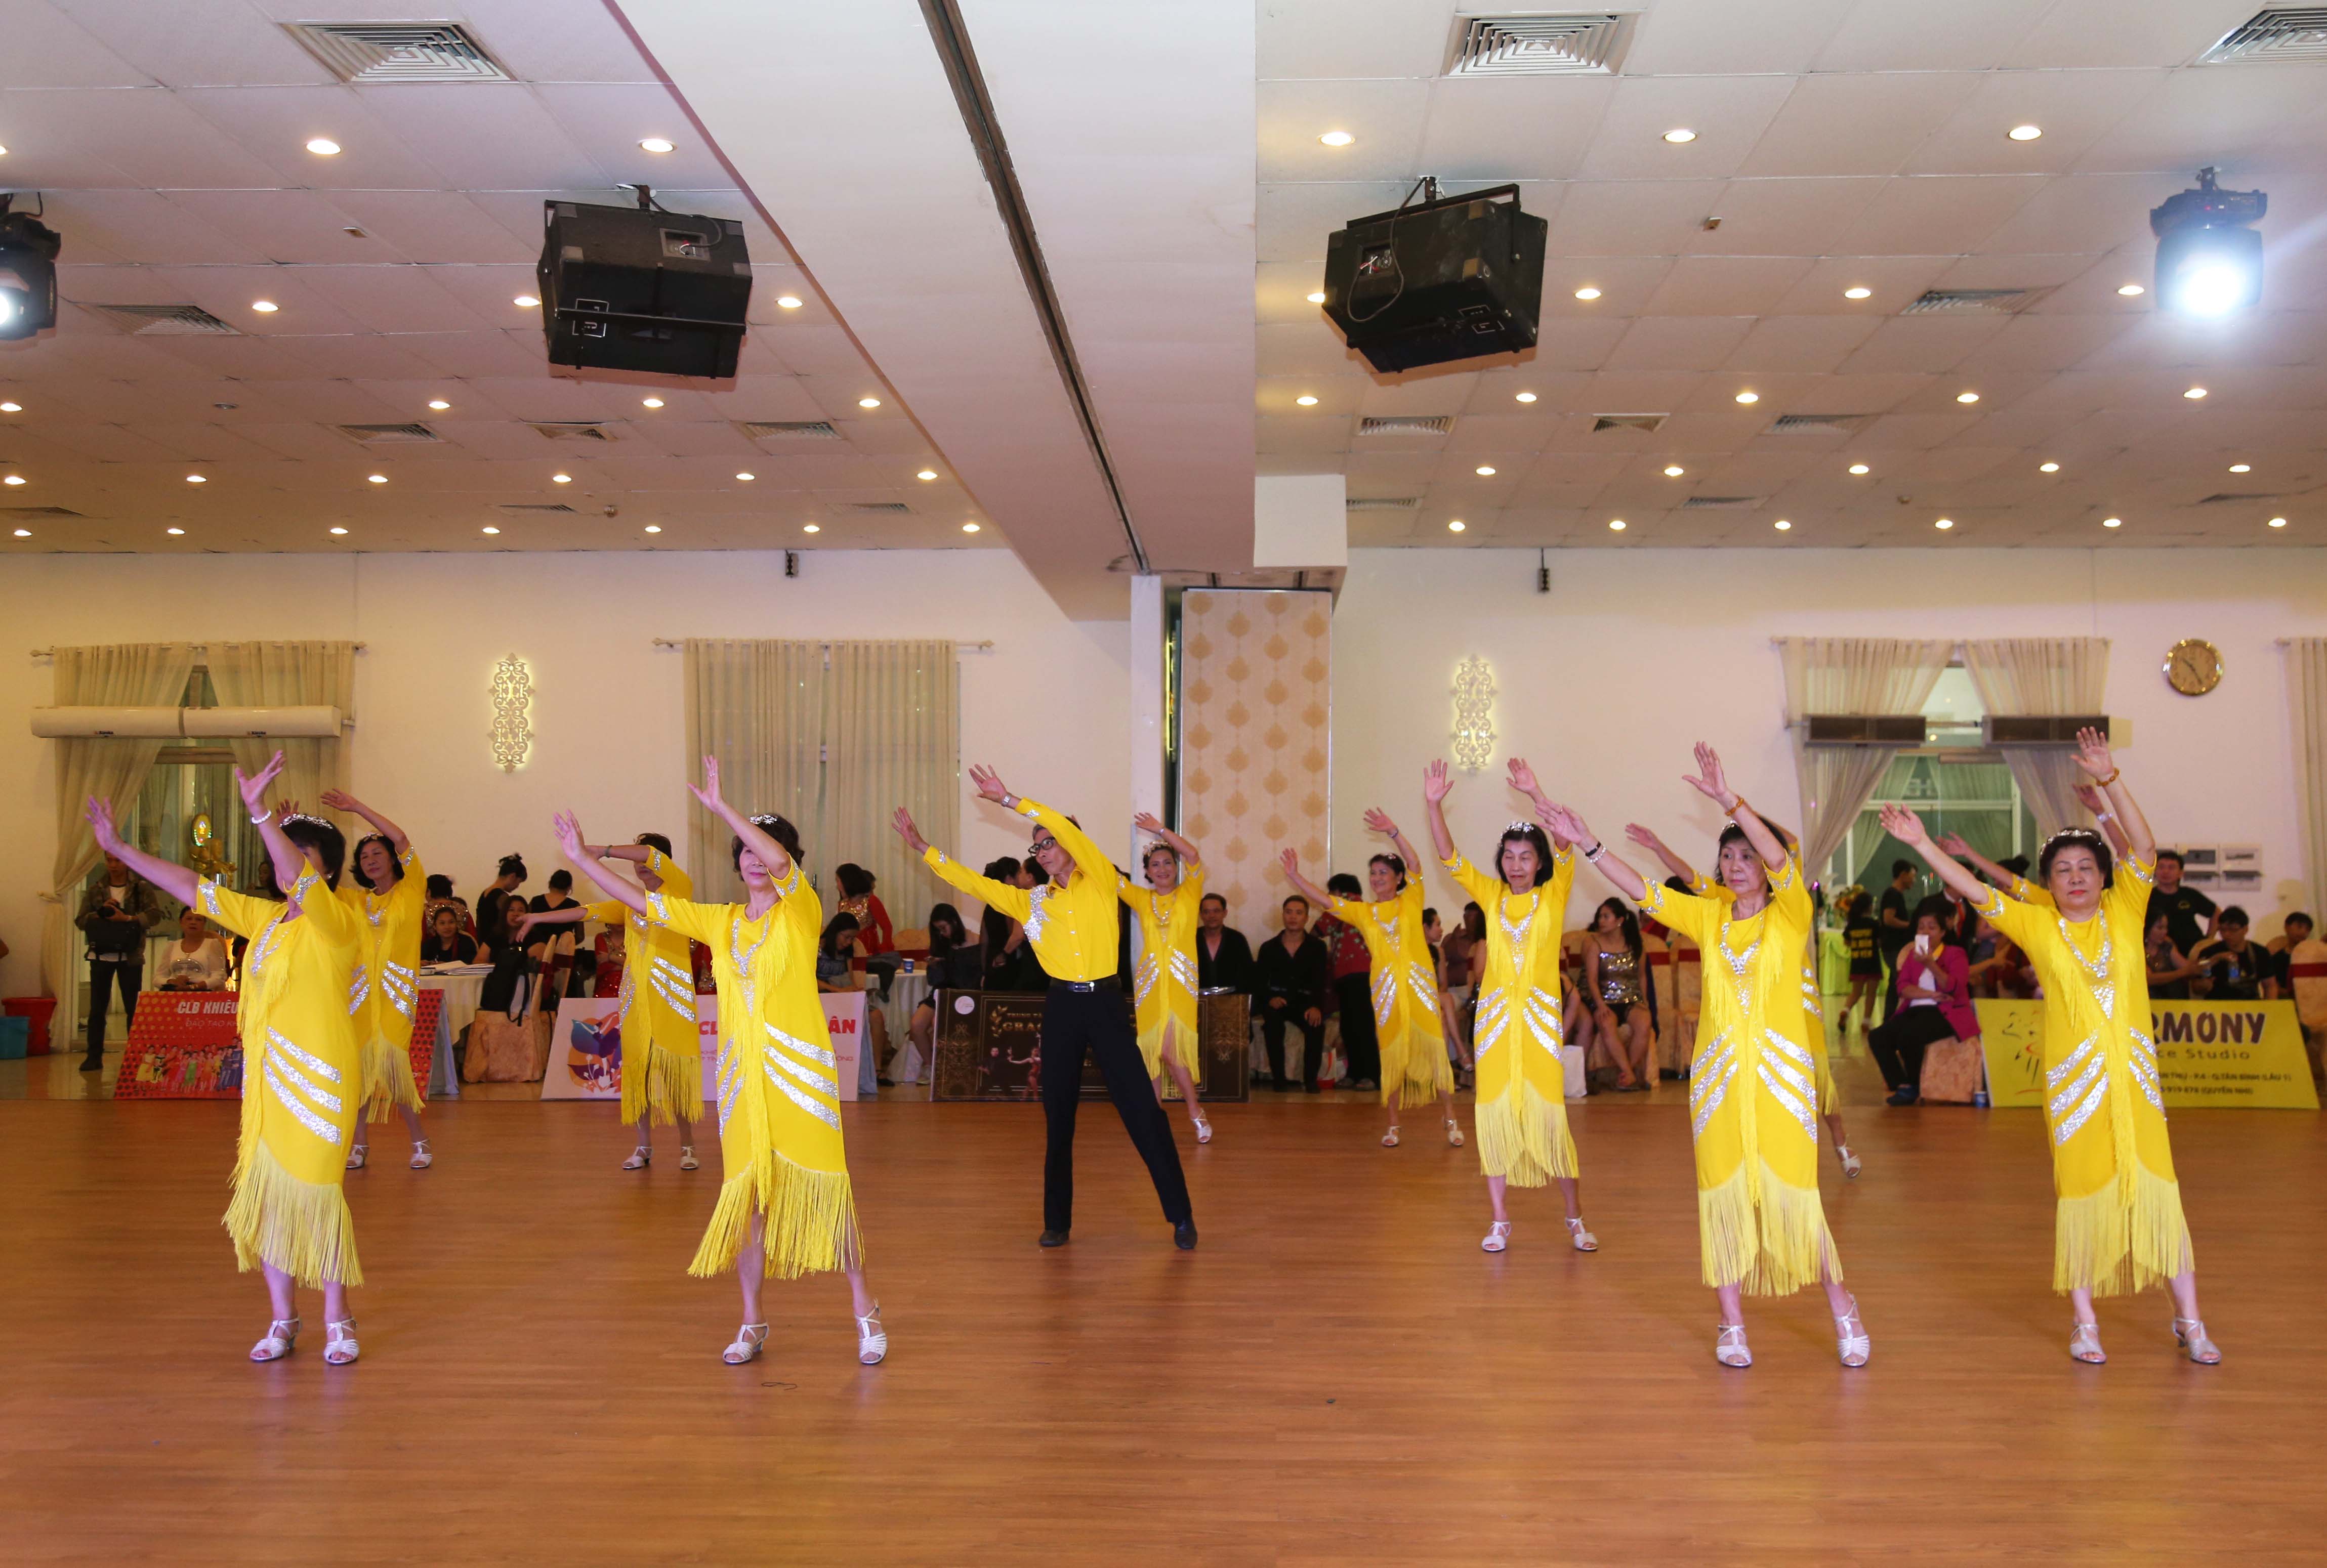 Hình ảnh: Gần 300 VĐV tham dự Giải khiêu vũ thể thao Cúp Grace Dance Mở Rộng số 2